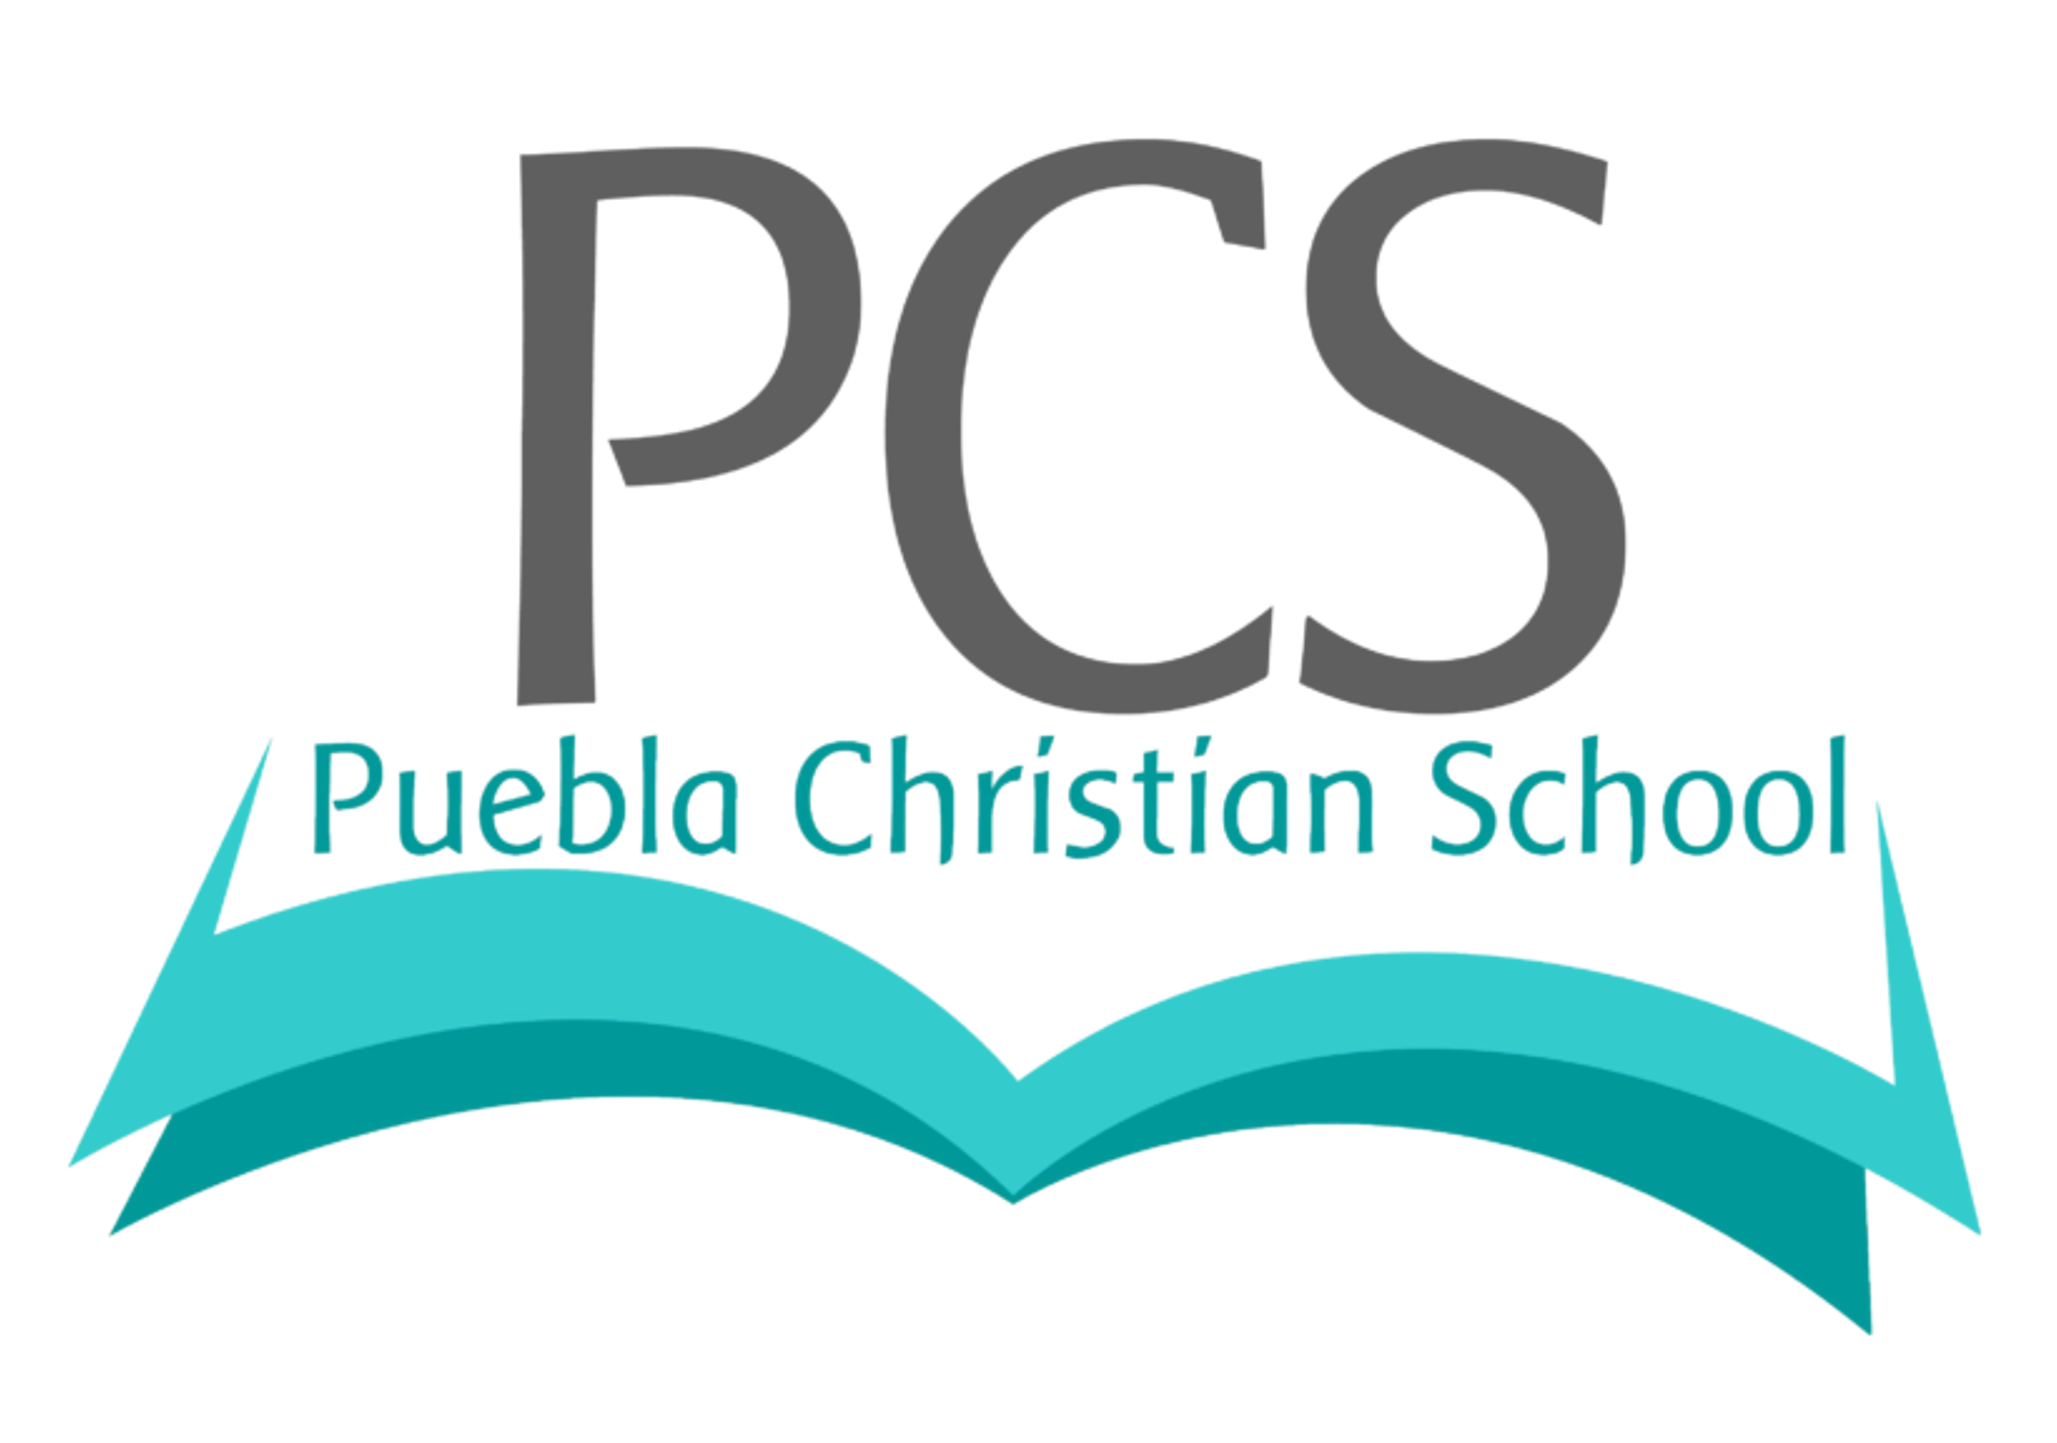 Puebla Christian School